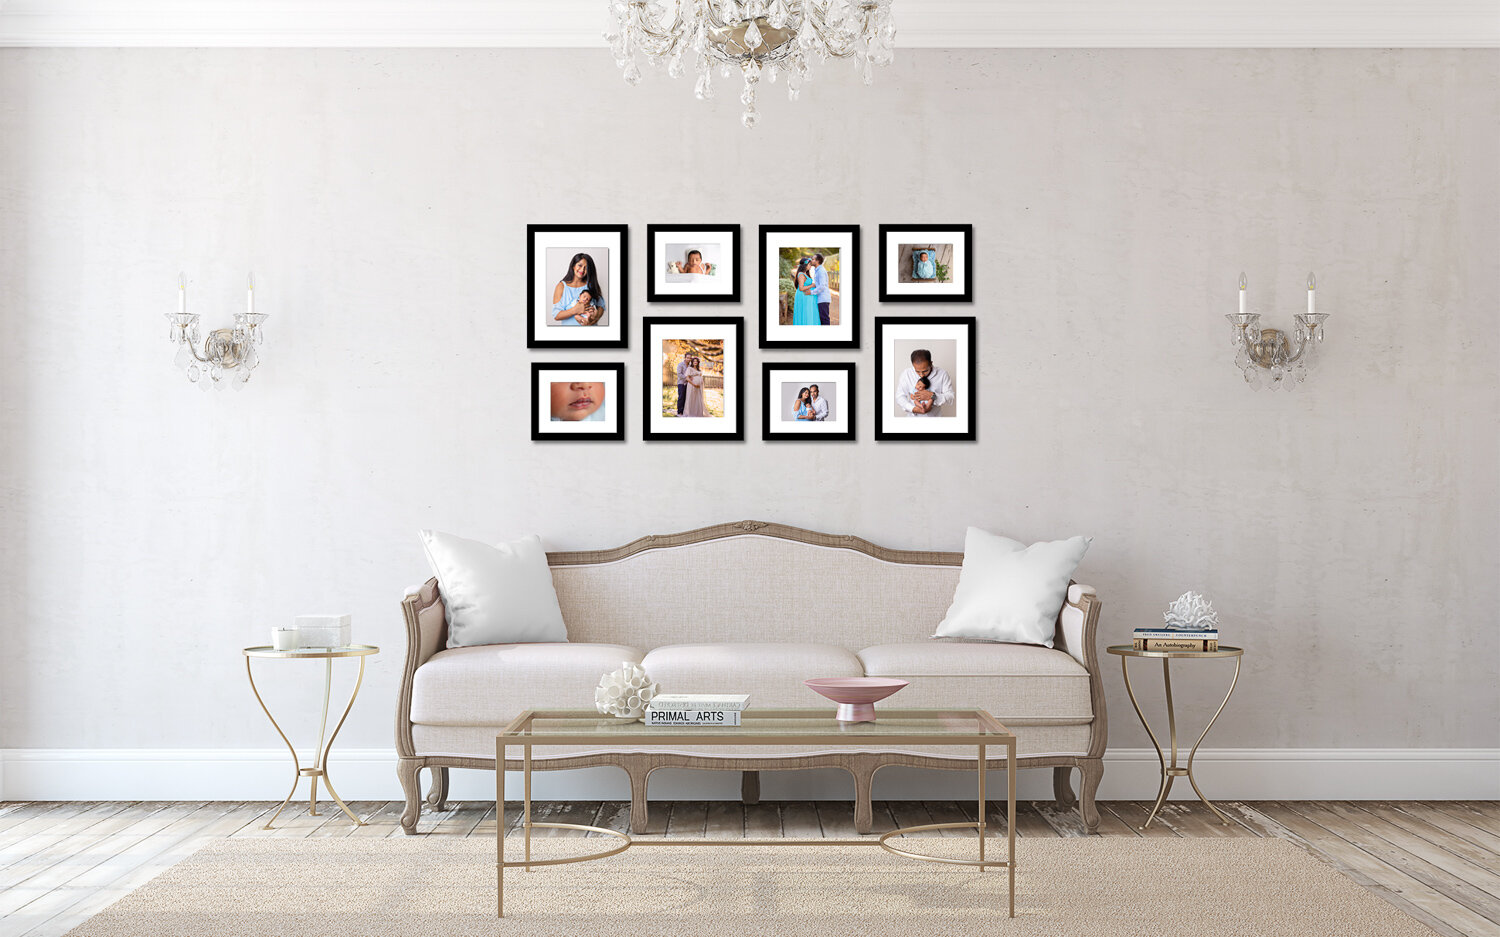 Couch family storyt telling frames.jpg